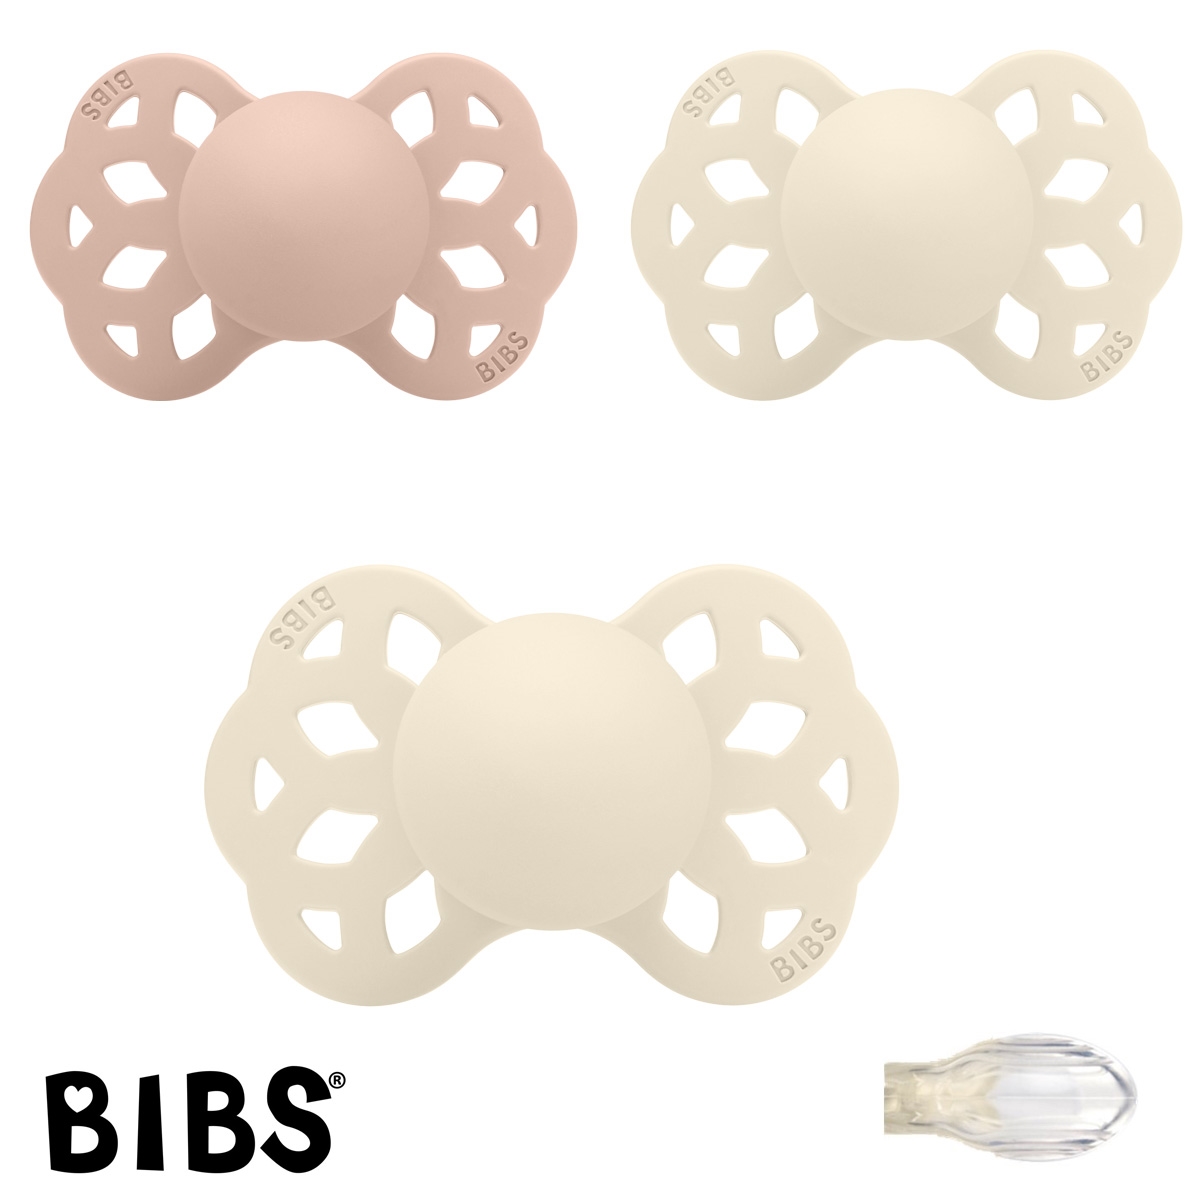 BIBS Infinty Sutter med navn str1, 1 Blush, 2 Ivory, Symmetrisk Silikone, Pakke med 3 sutter